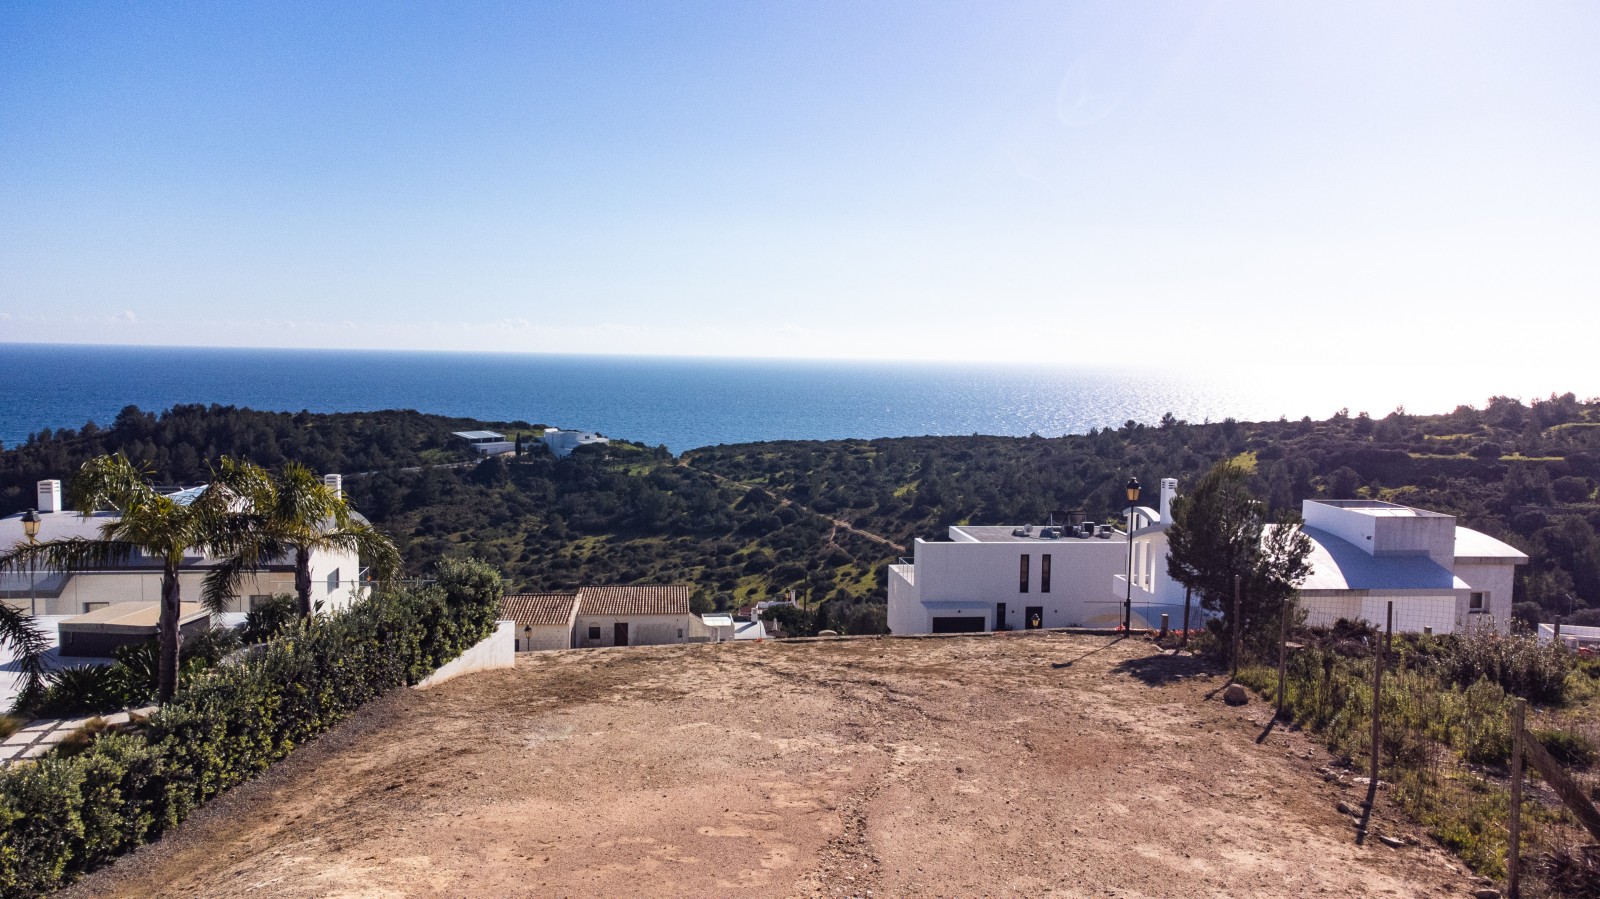 Grundstück mit genehmigtem Projekt, zu verkaufen, in Budens, Algarve_217080